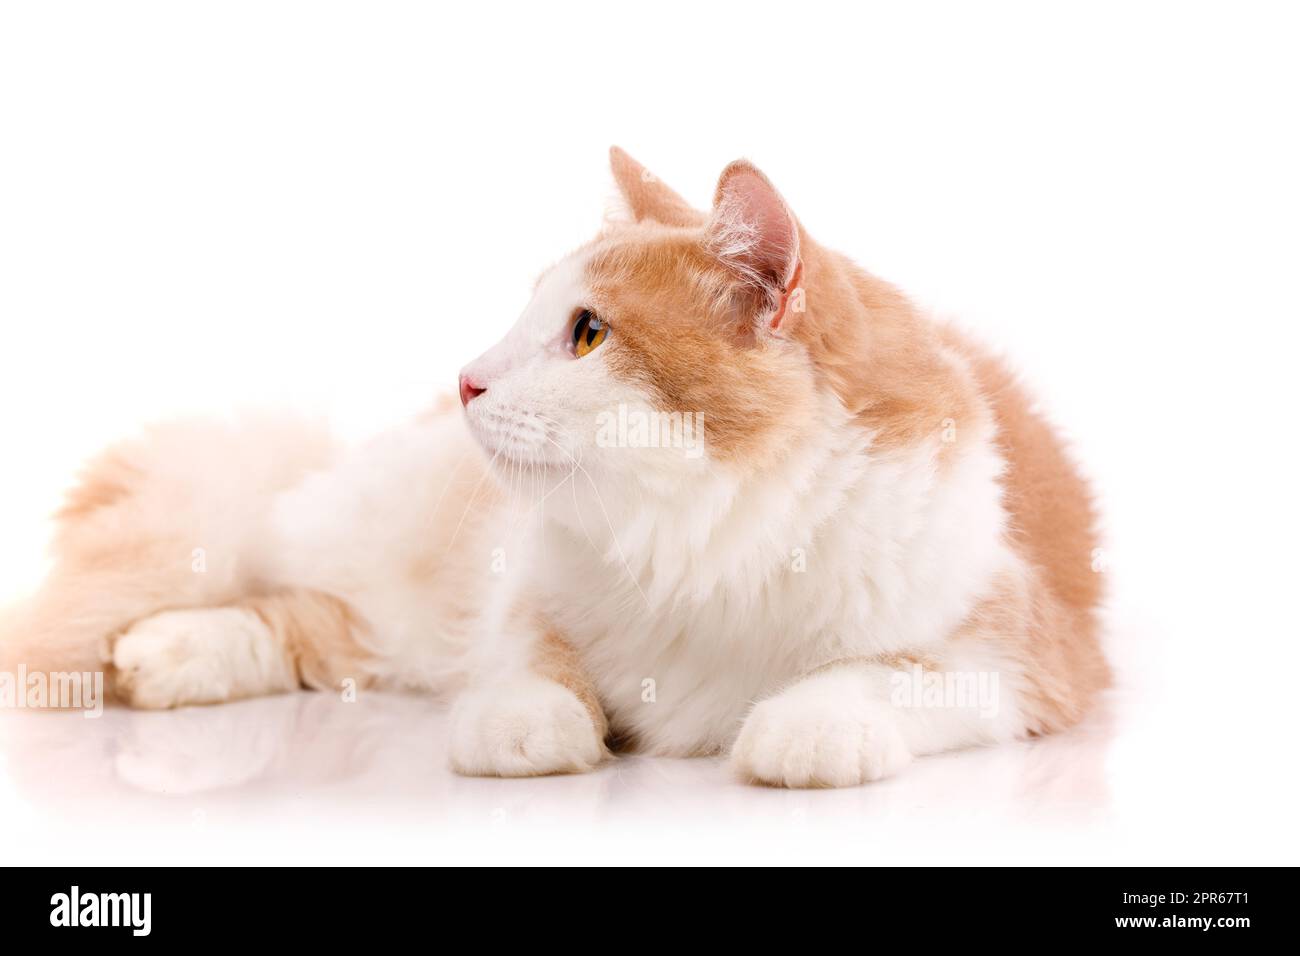 Il gatto adulto si trova in pose divertenti su uno sfondo bianco. Animali domestici ammessi. Foto Stock